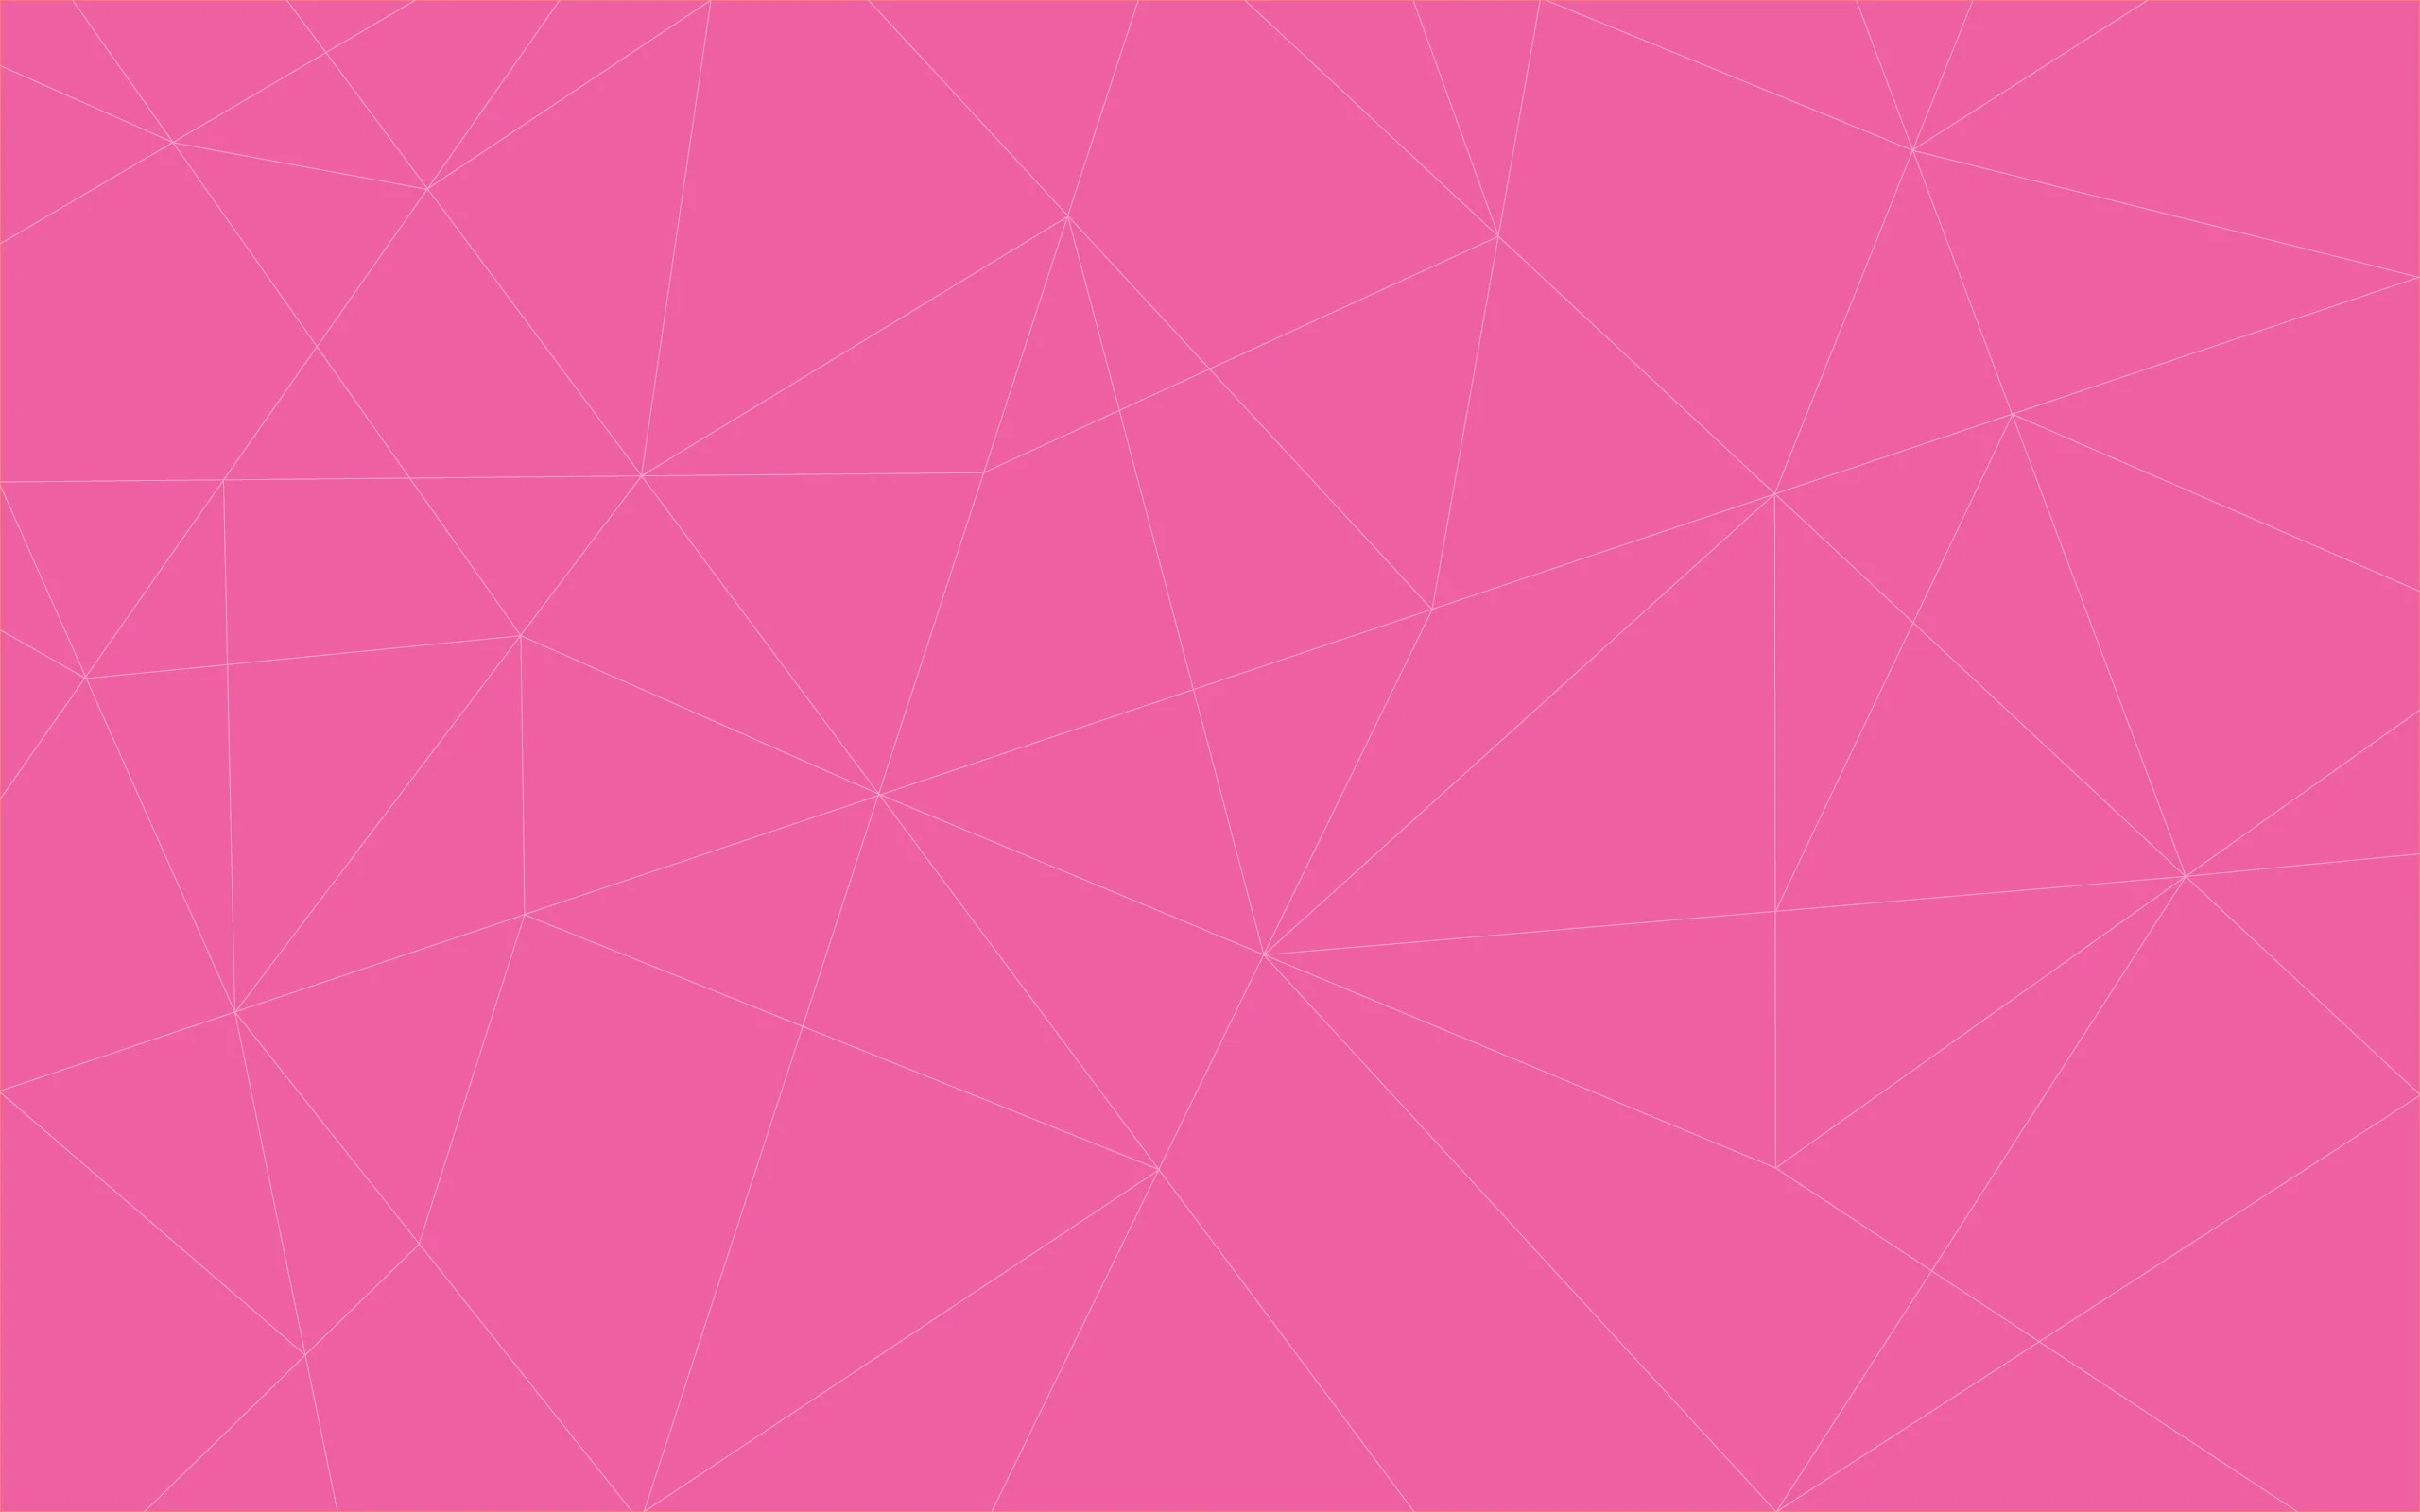 Hình nền đẹp màu hồng sẽ khiến bạn cảm thấy ngọt ngào như những bông hoa hồng tươi tắn. Sắm ngay hình nền này để tạo không gian làm việc thư giãn và đầy năng lượng. Bạn sẽ yêu màu hồng hơn nữa khi được ứng dụng làm hình nền trên điện thoại hay máy tính của mình.